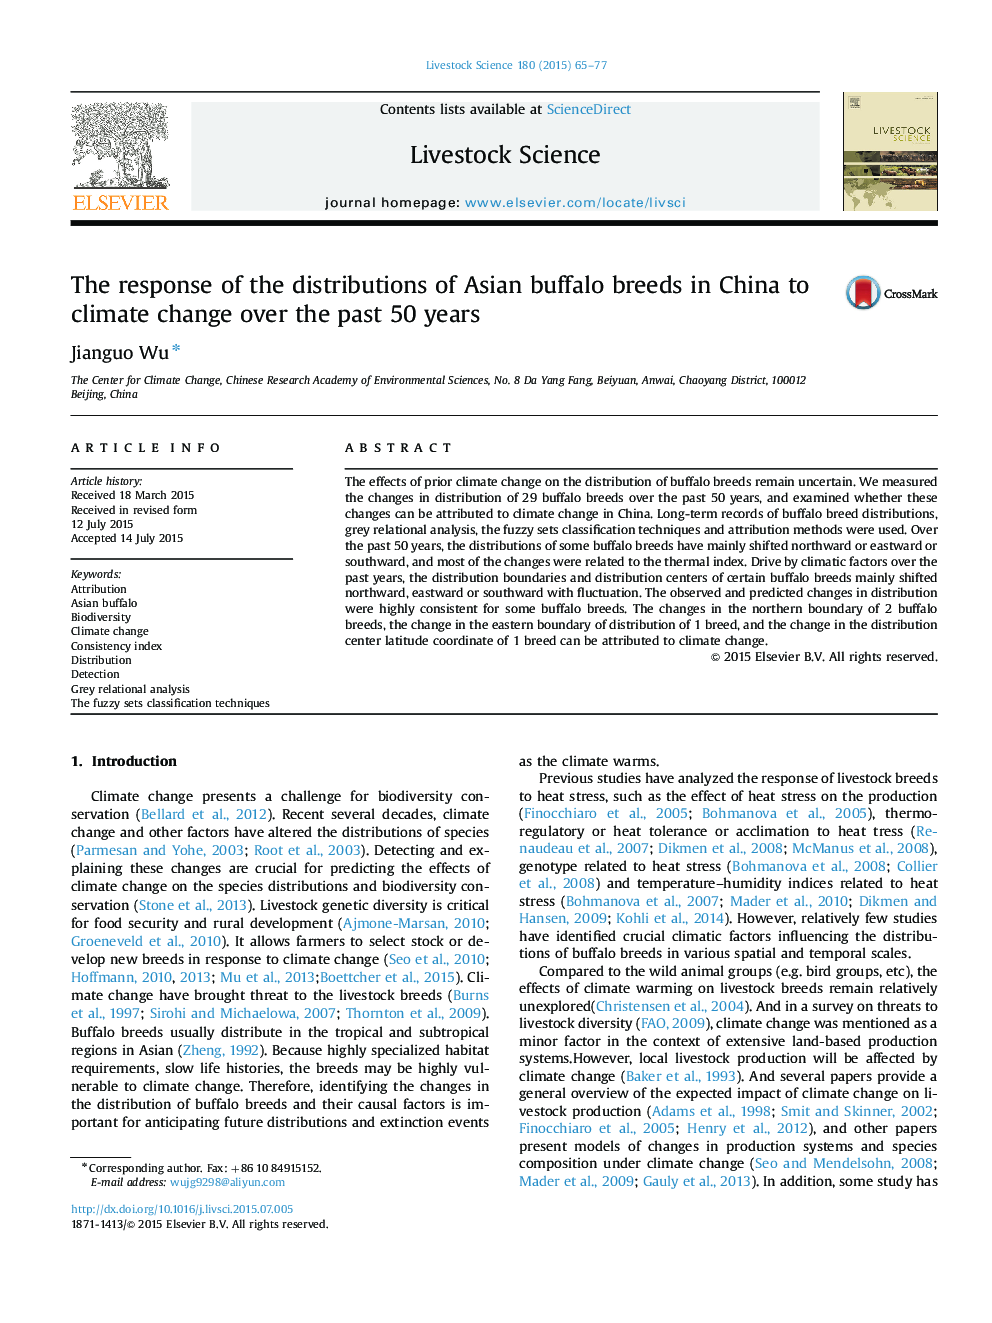 پاسخ توزیع نژادهای بوفه آسیایی در چین به تغییرات آب و هوایی در طول 50 سال گذشته 